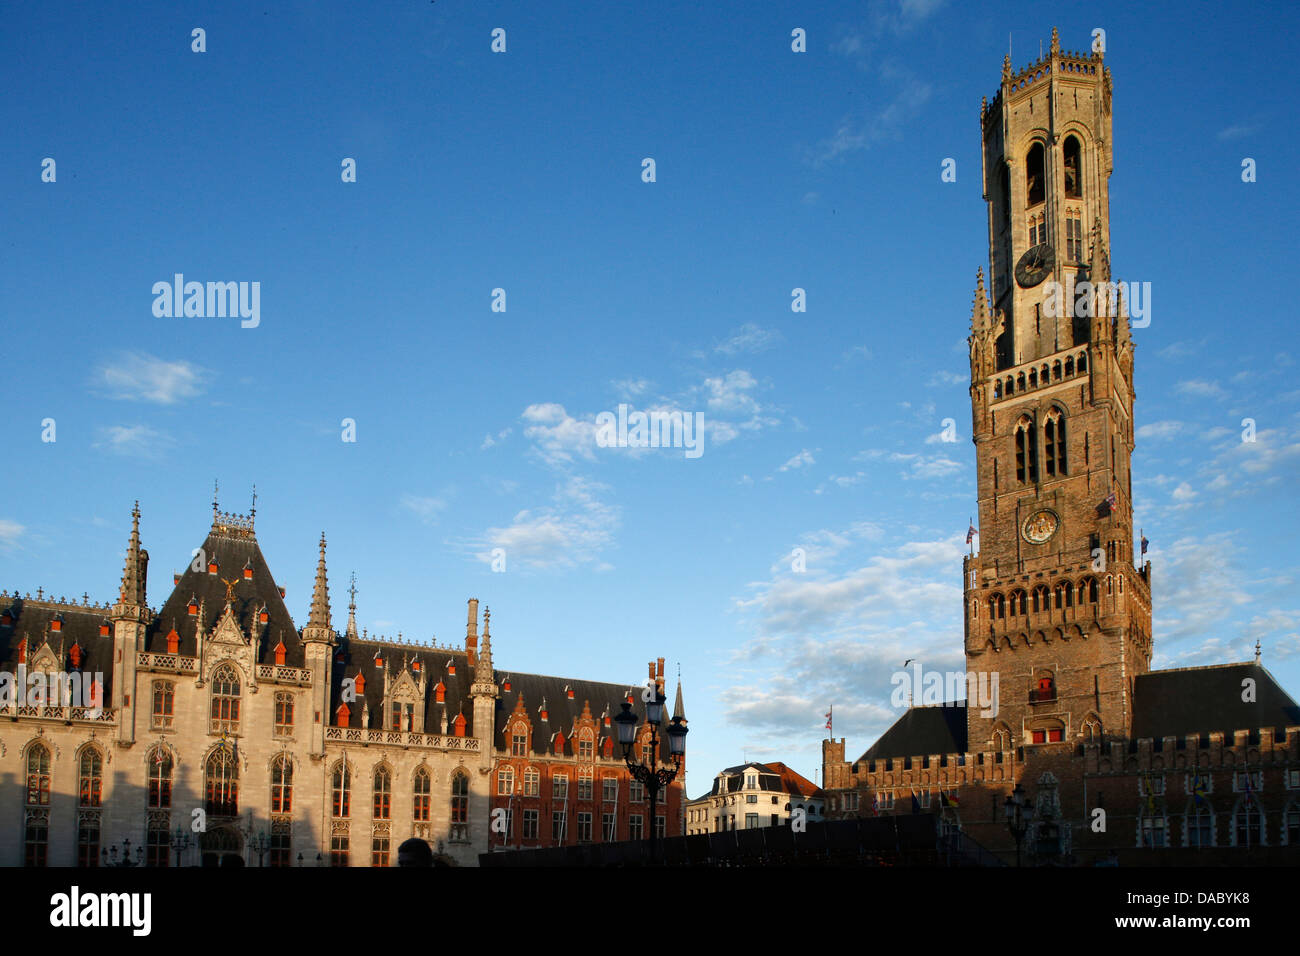 Beffroi de la place du marché, Bruges, Flandre occidentale, Belgique, Europe Banque D'Images